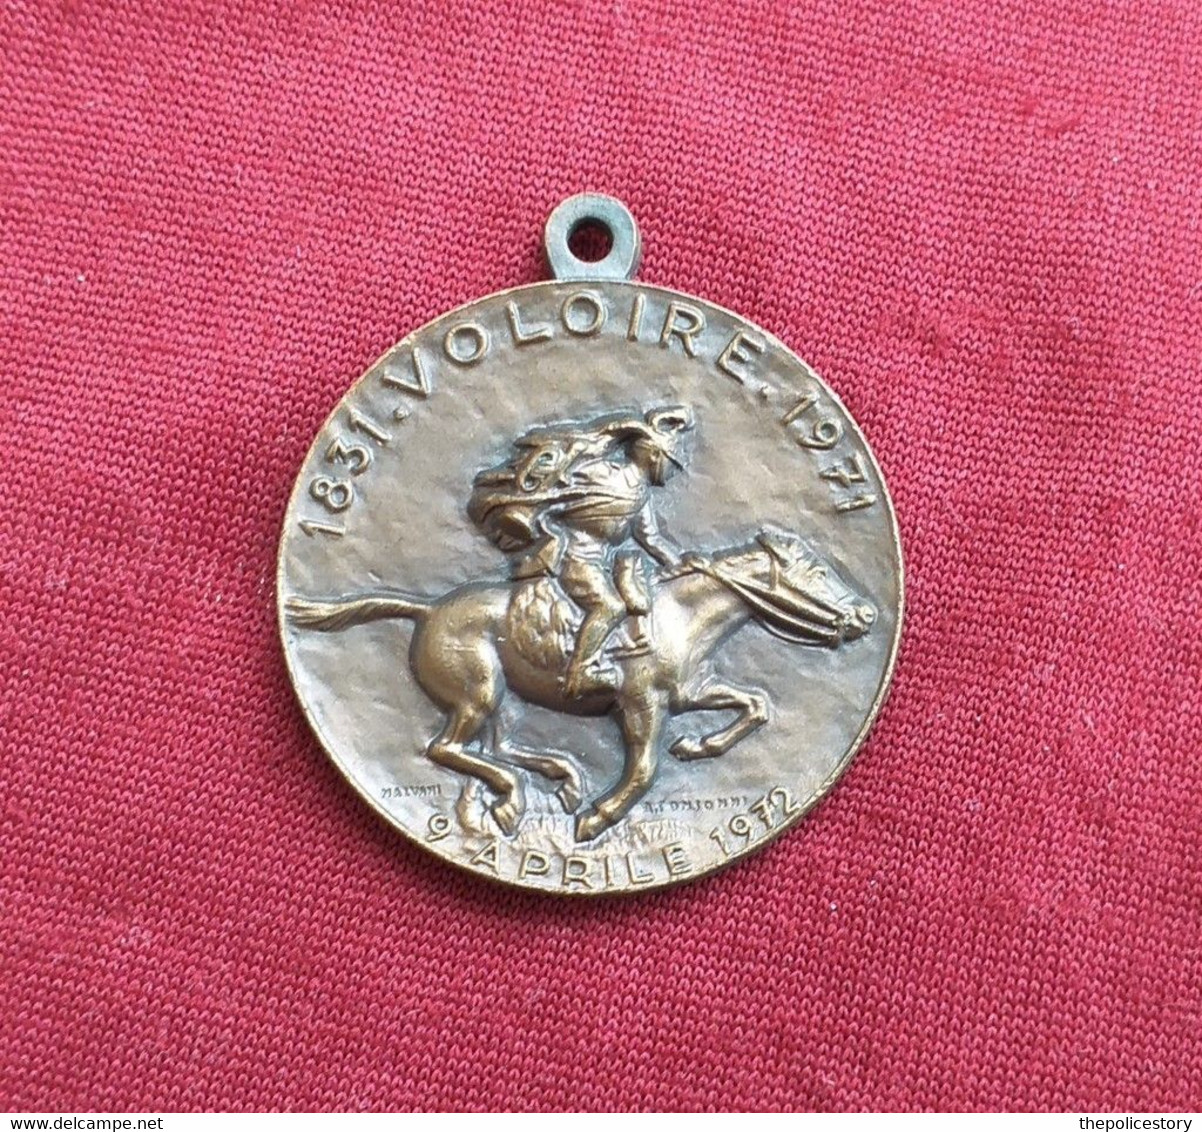 Medaglia D'epoca 140 Anni Del Reggimento Artiglieria A Cavallo Voloire 1831-1971 - Italy